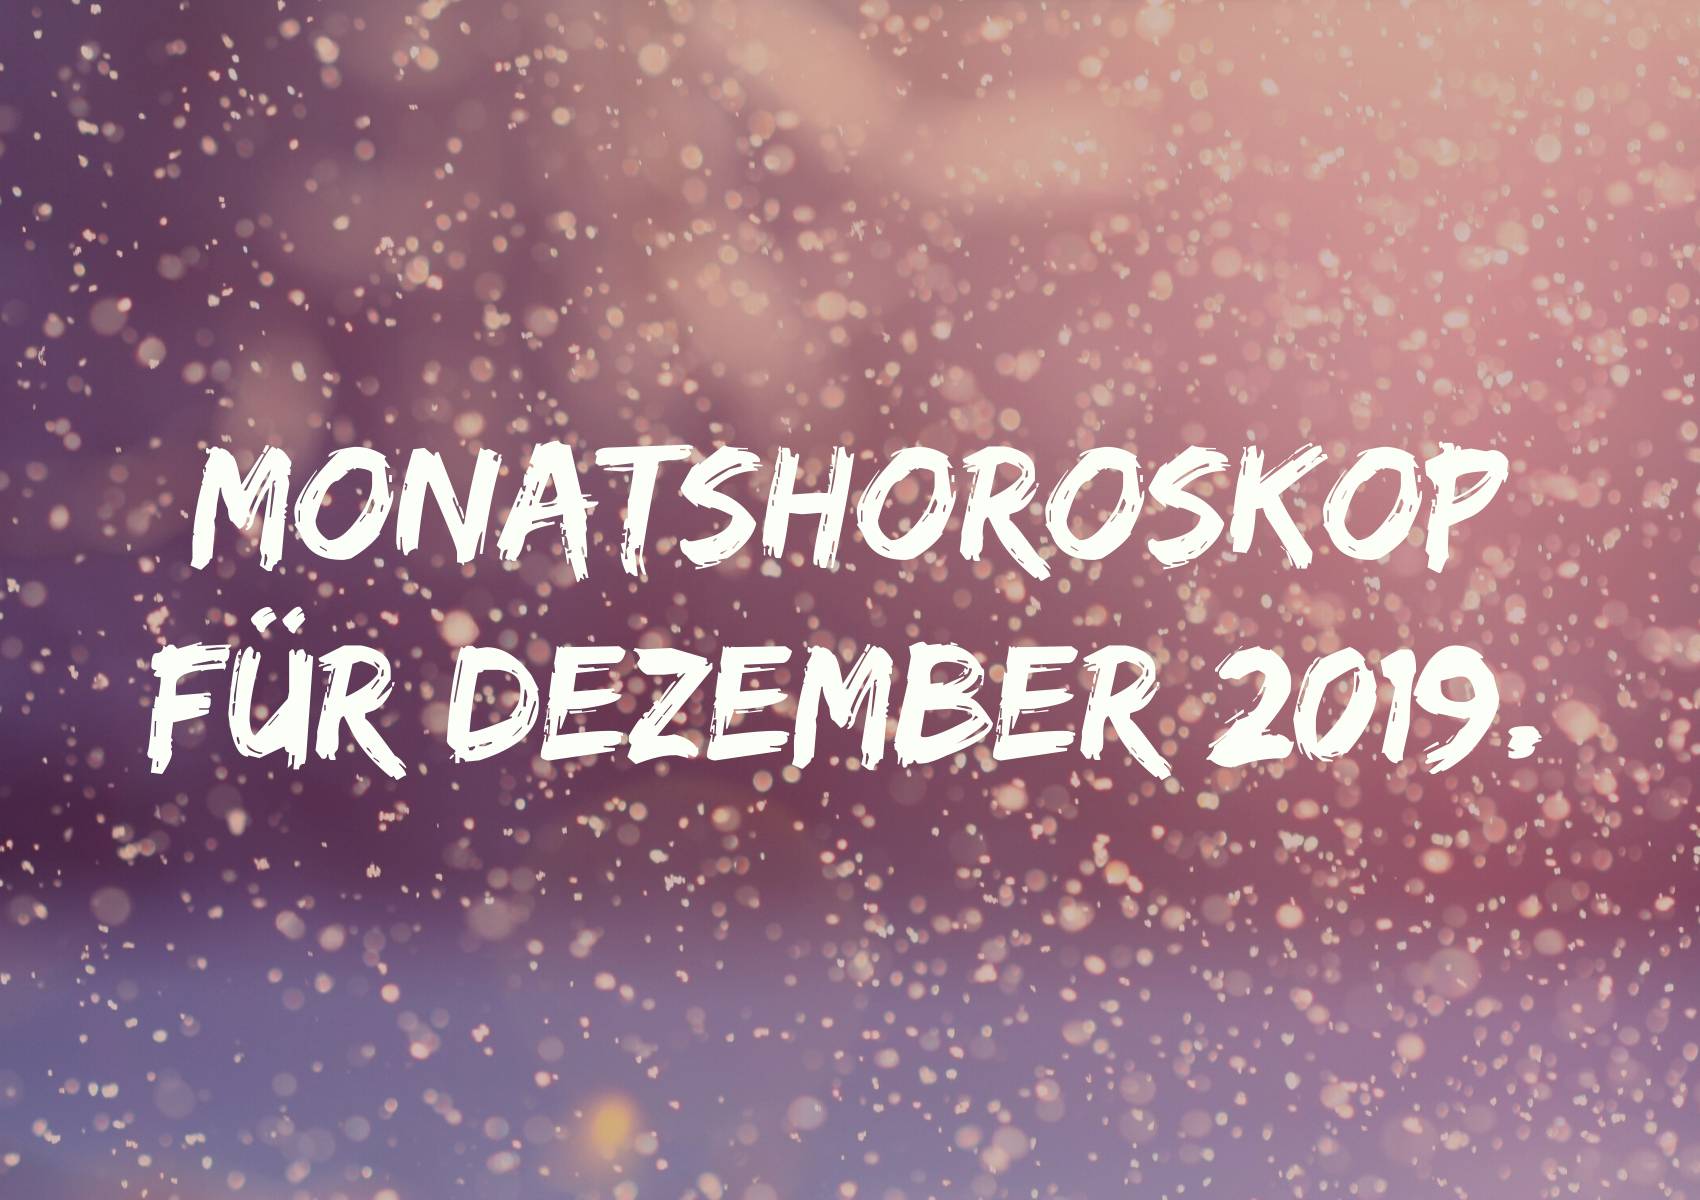 Monatshoroskop für Dezember 2019.